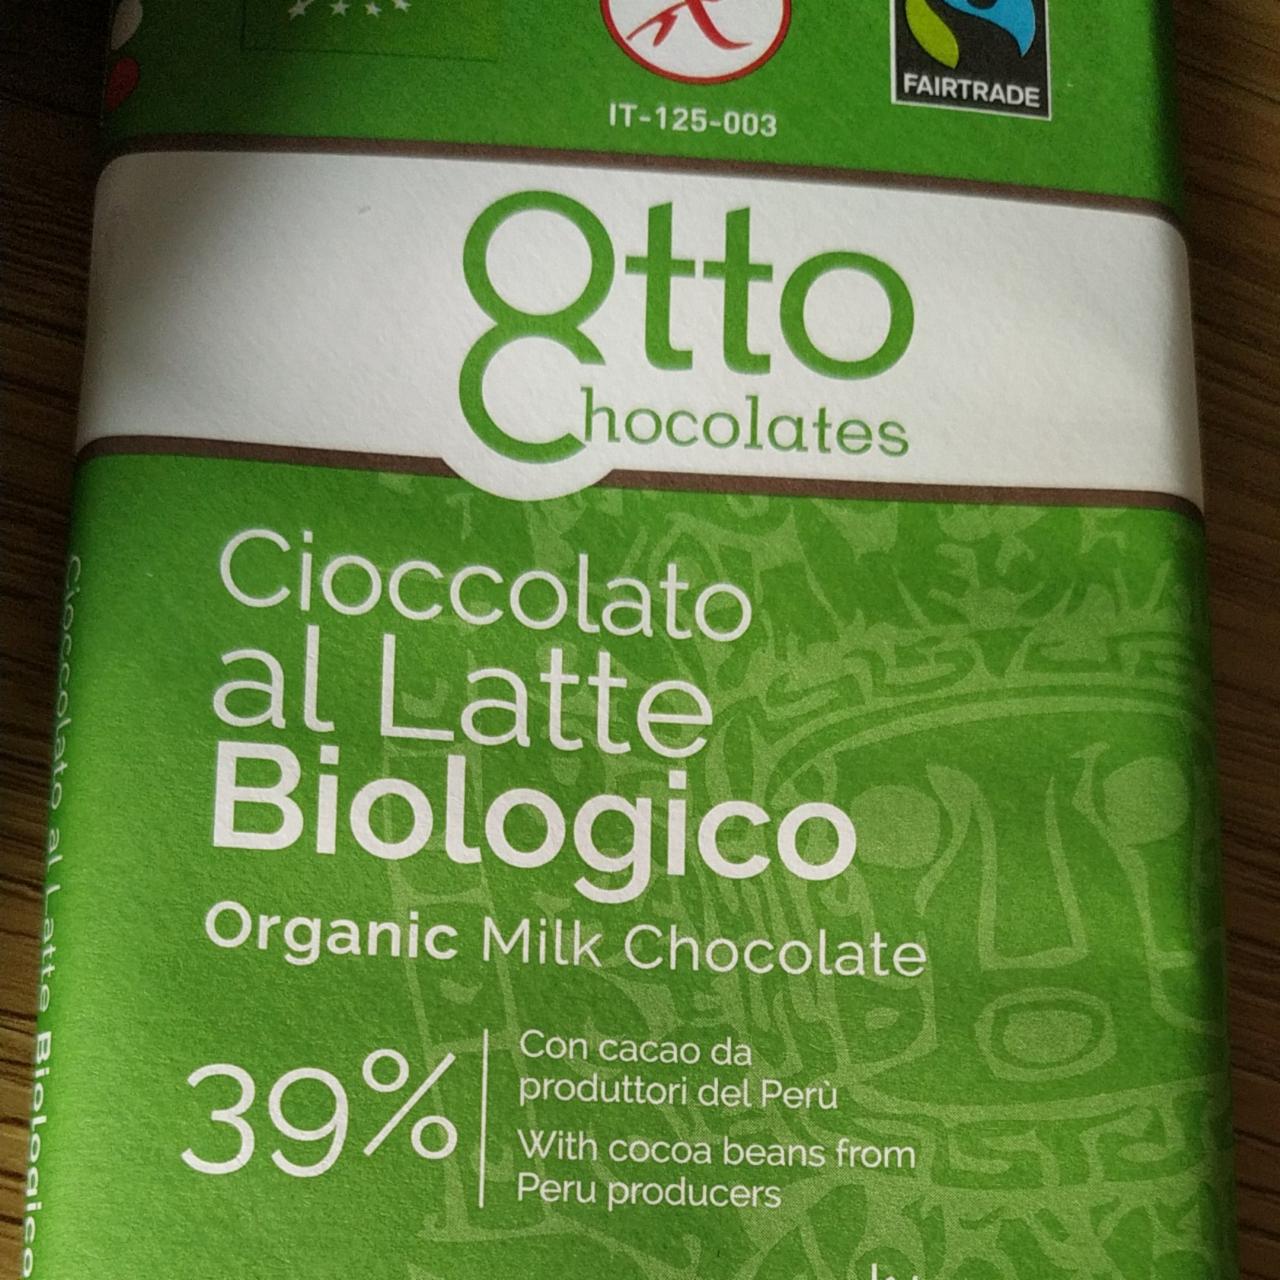 Fotografie - Cioccolato al Latte Biologico 39% Otto Chocolates